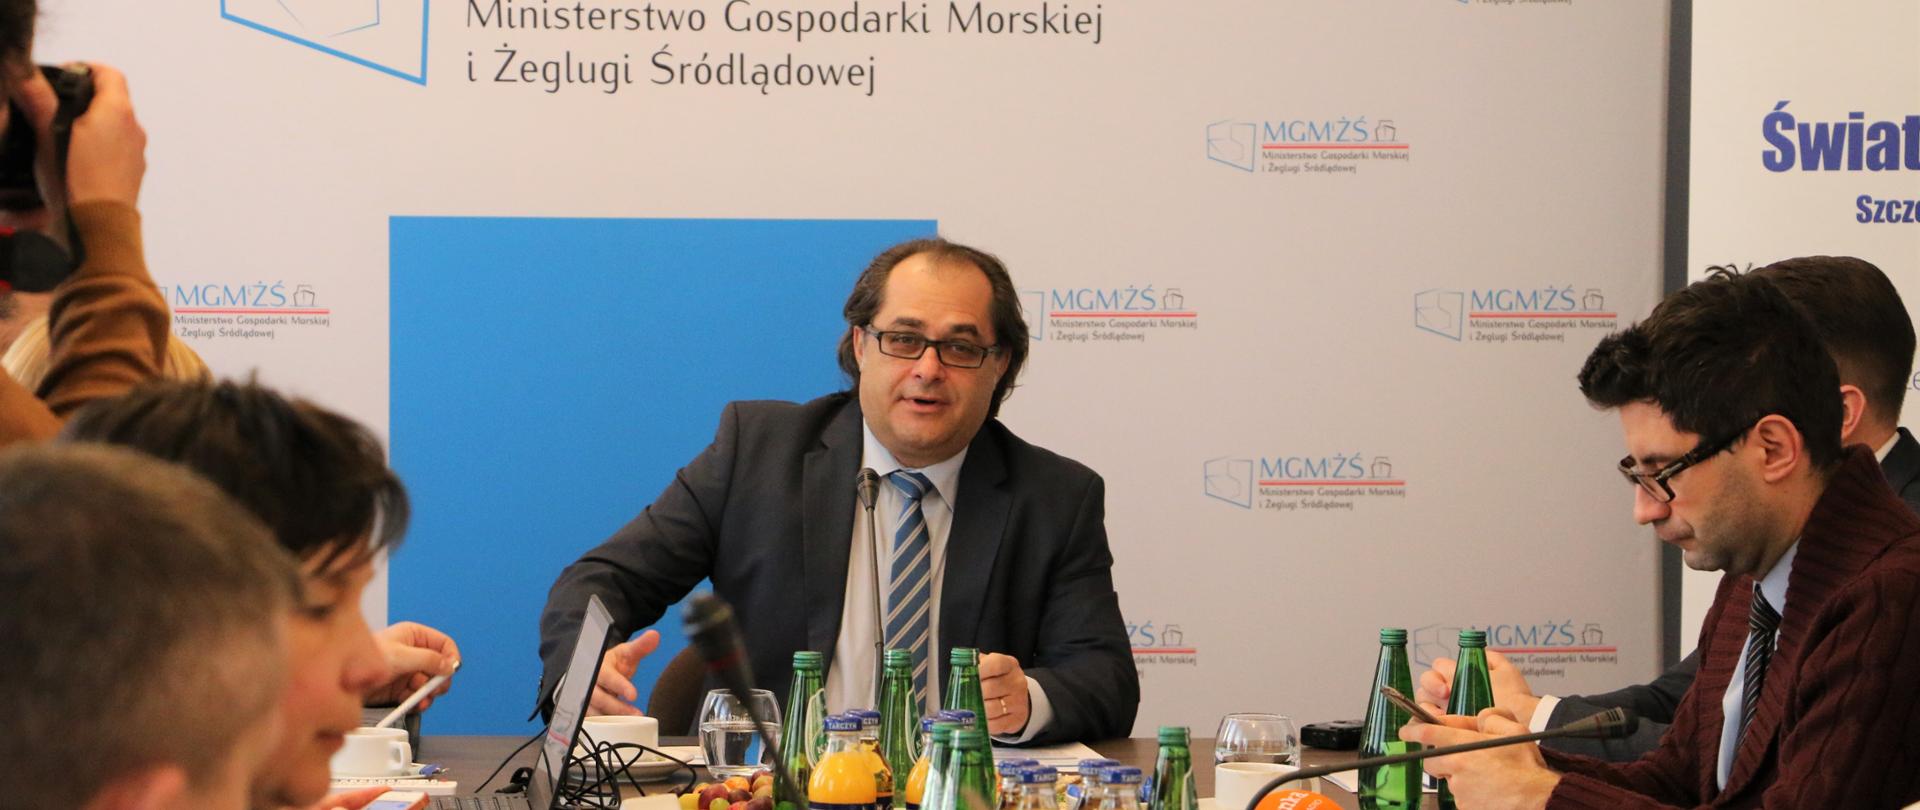 W centrum zdjęcia znajduje się minister Marek Gróbarczyk, który przemawia do zebranych dziennikarzy.